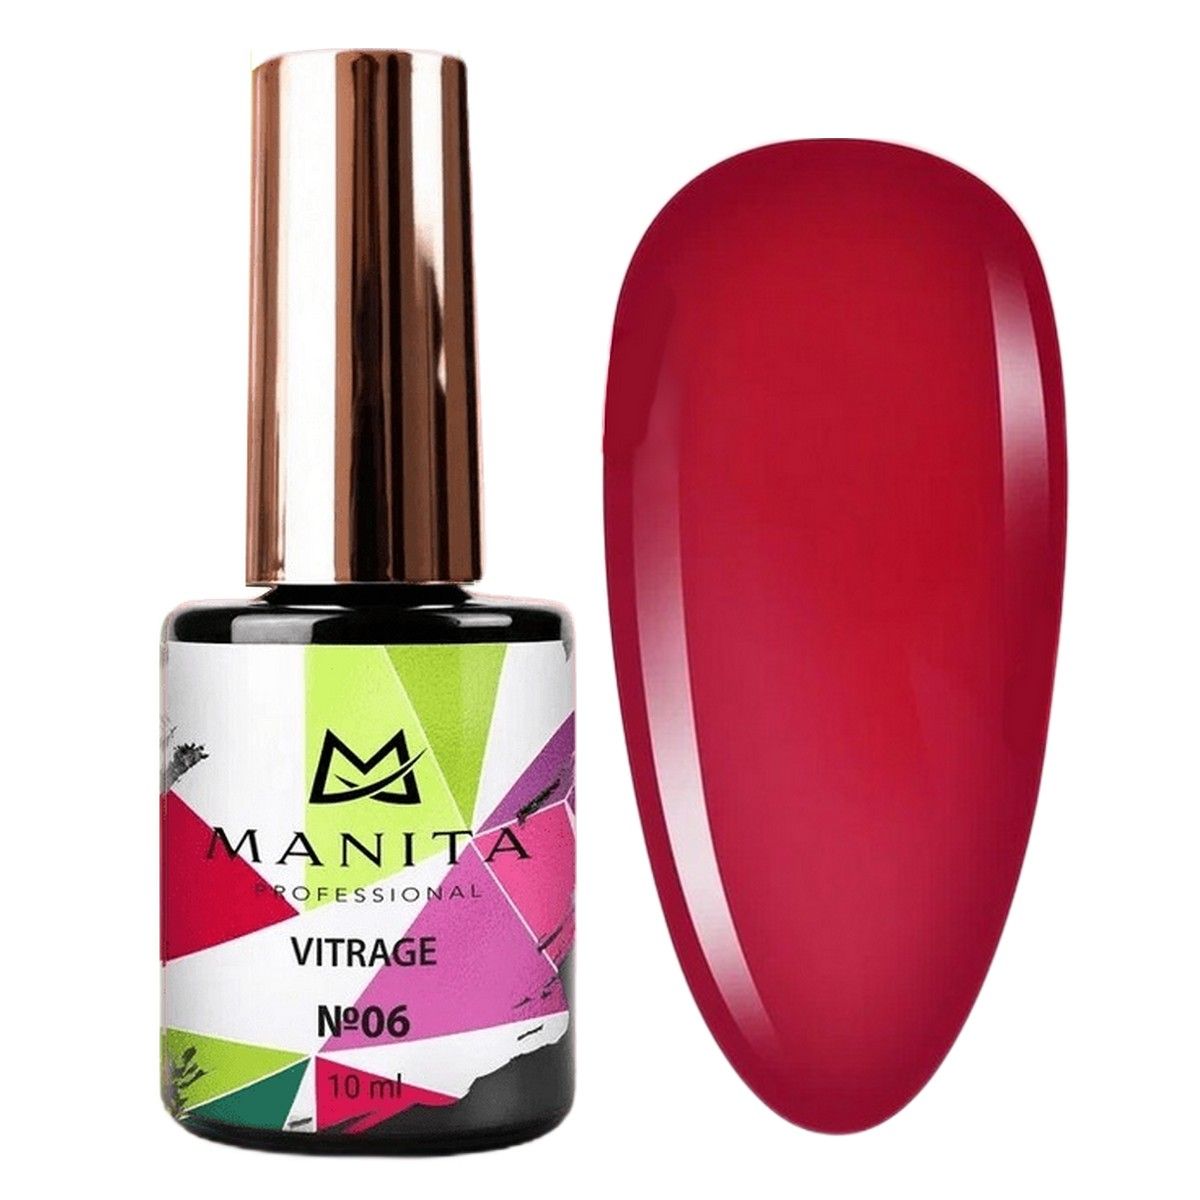 Гель-лак для ногтей Manita Professional c эффектом витража Vitrage №06, бордовый, 10 мл manita гель лак для ногтей opal